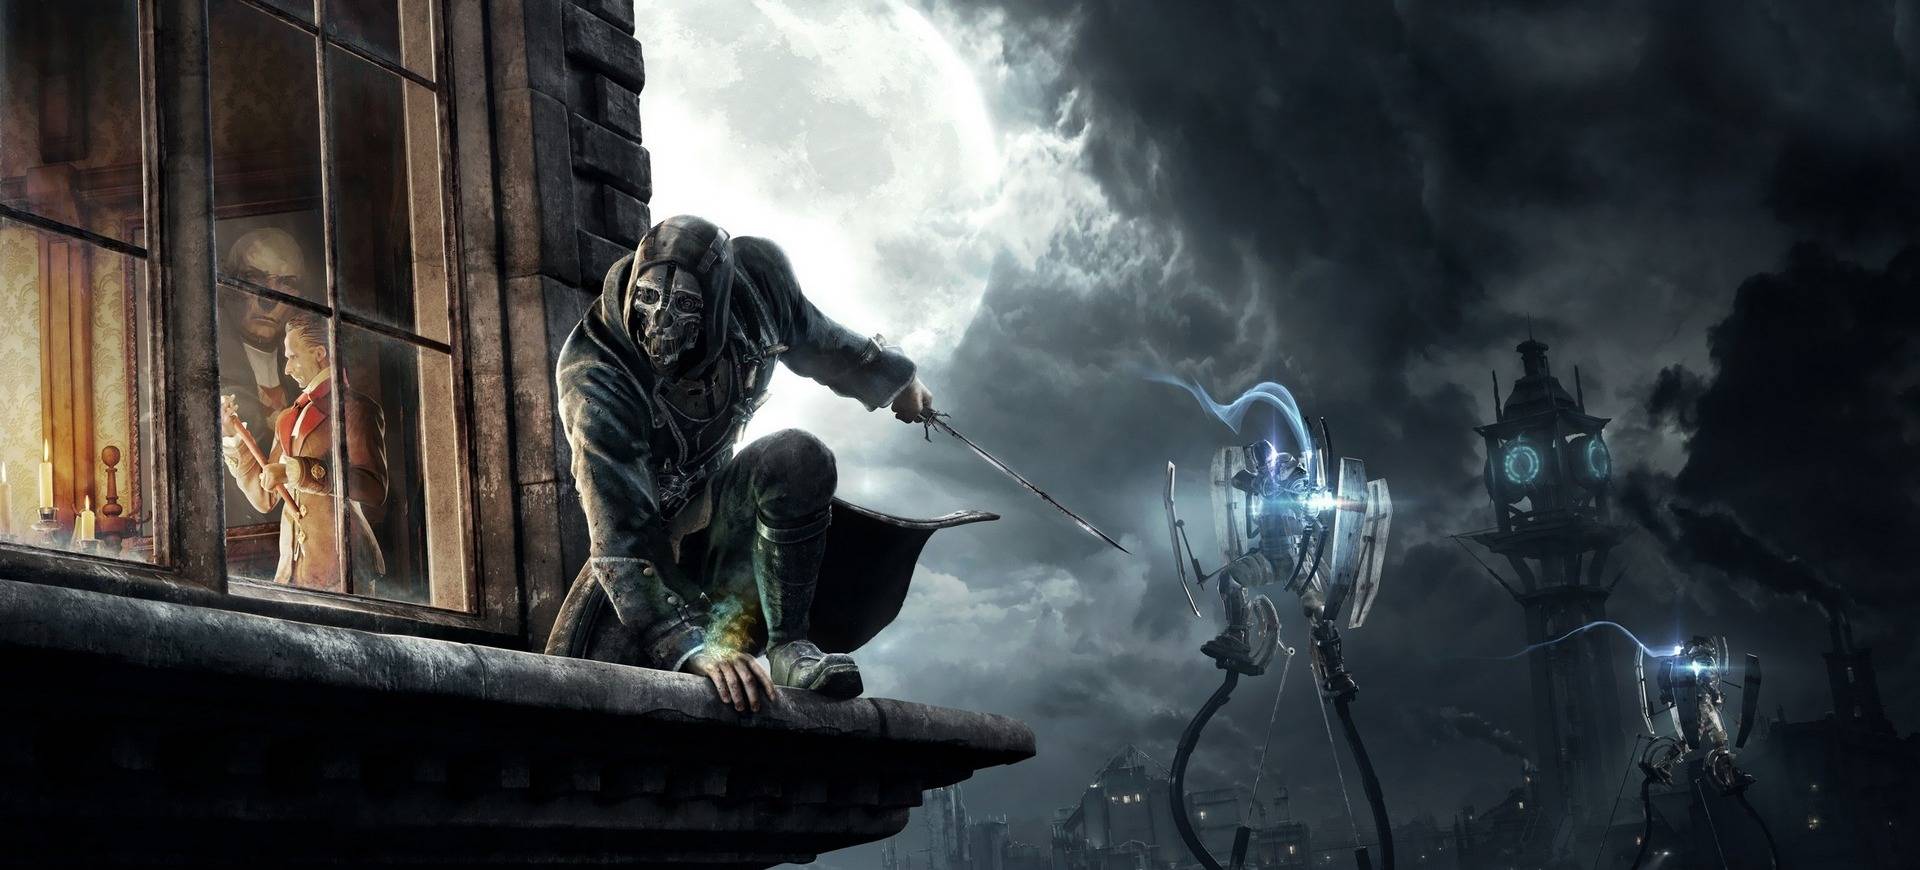 Phỏng đoán cốt truyện chính của Dishonored 2 qua những kết thúc của phần đầu